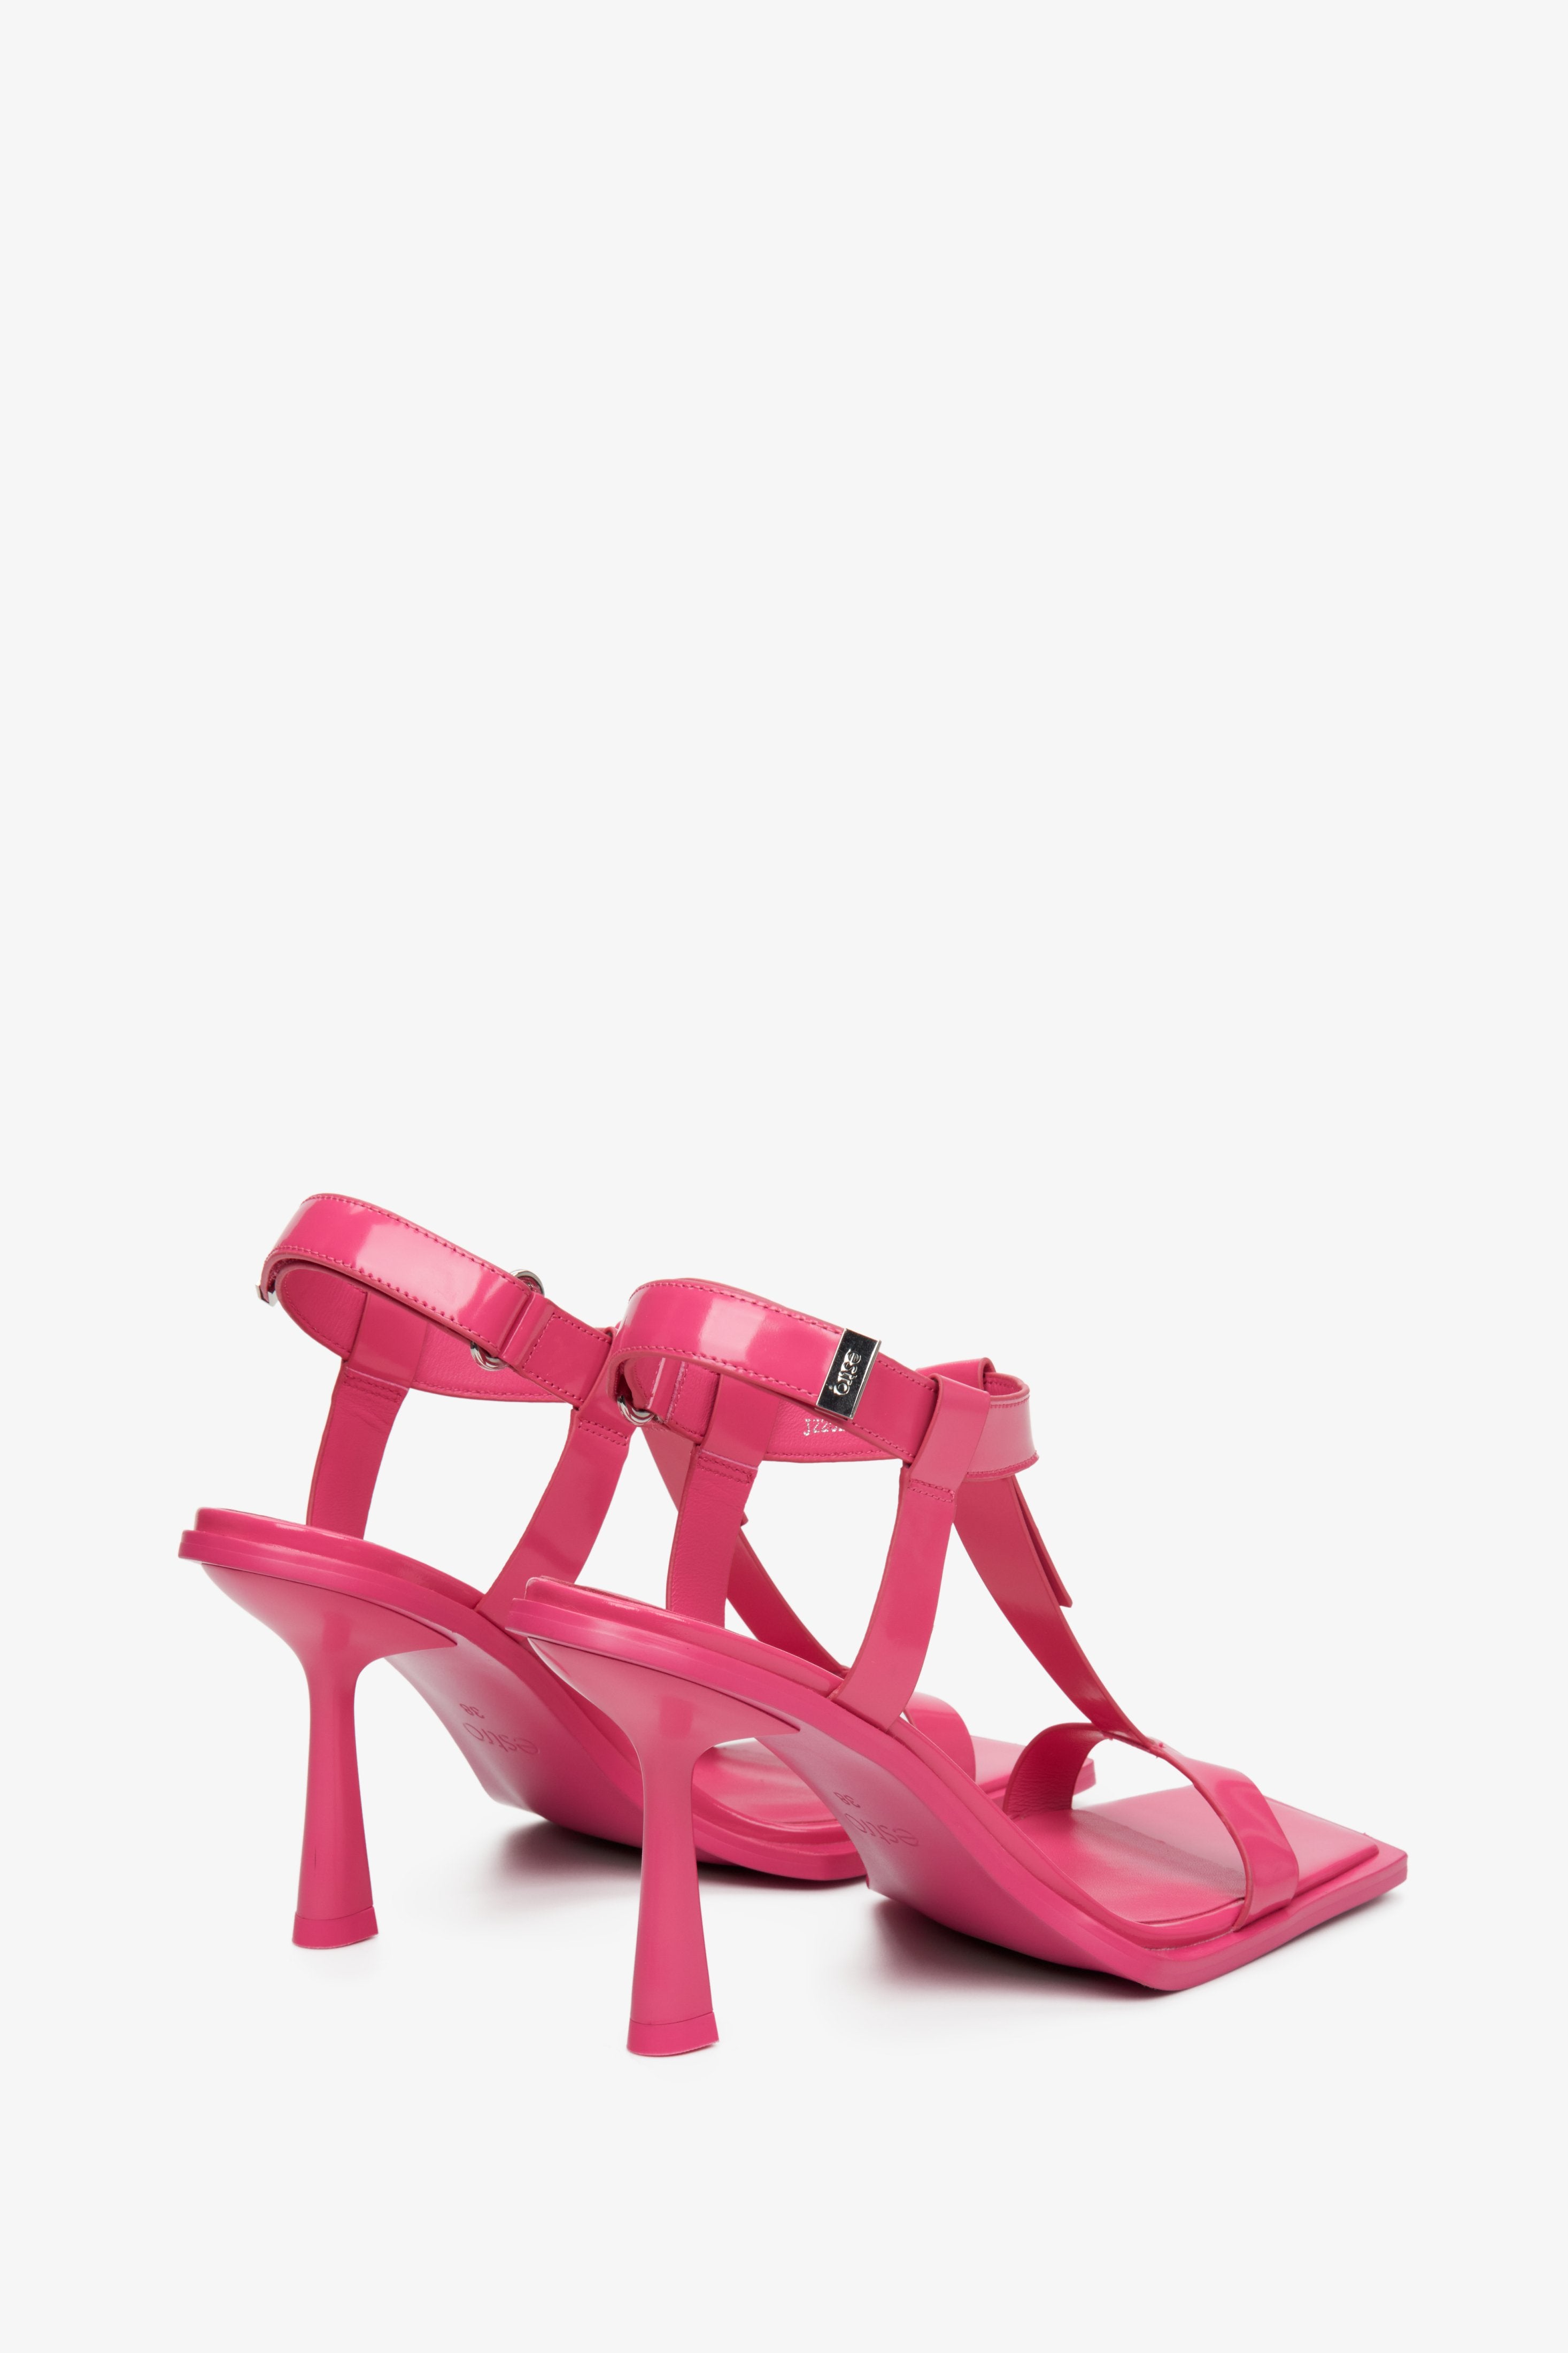 Damskie, różowe sandały Estro na szpilce - zbliżenie na obcas i linię boczną butów.